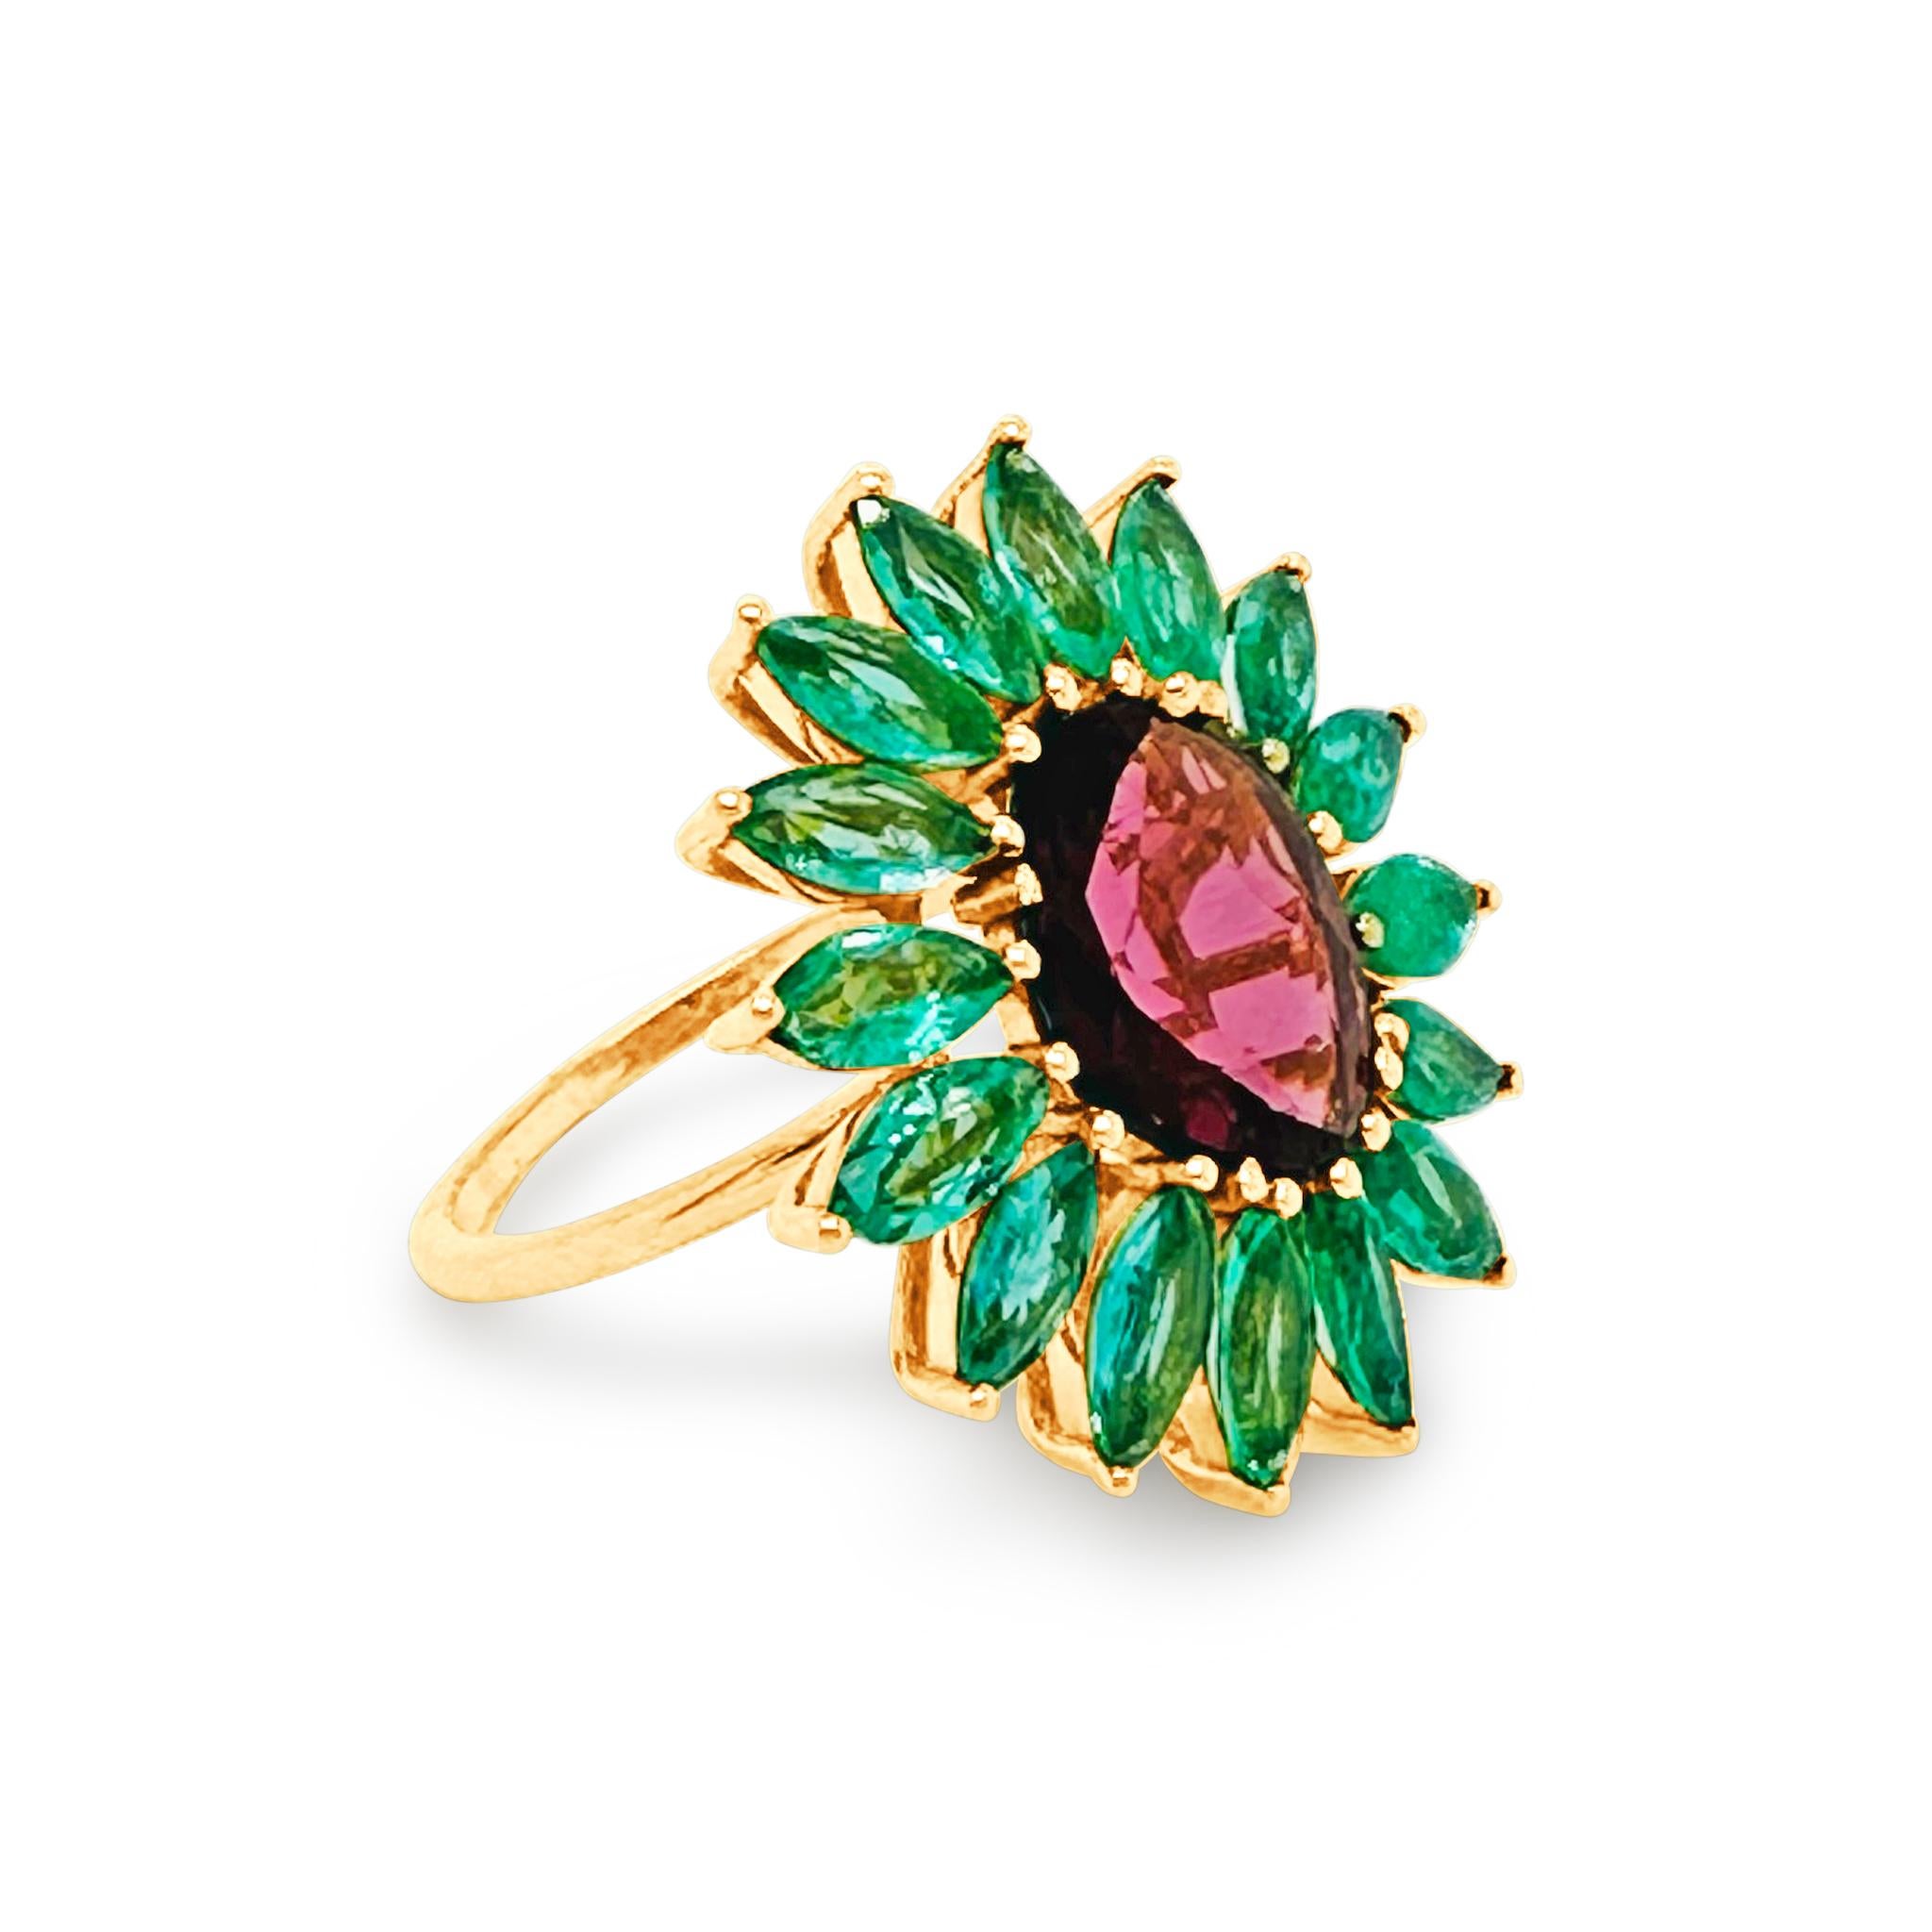 Tresor Edelstein Ring verfügt über 4,87 Karat Edelstein in 18k Gelbgold. Die Ringe sind eine Ode an die luxuriöse und doch klassische Schönheit mit funkelnden Diamanten. Ihr zeitgemäßes und modernes Design macht sie vielseitig einsetzbar. Der Ring